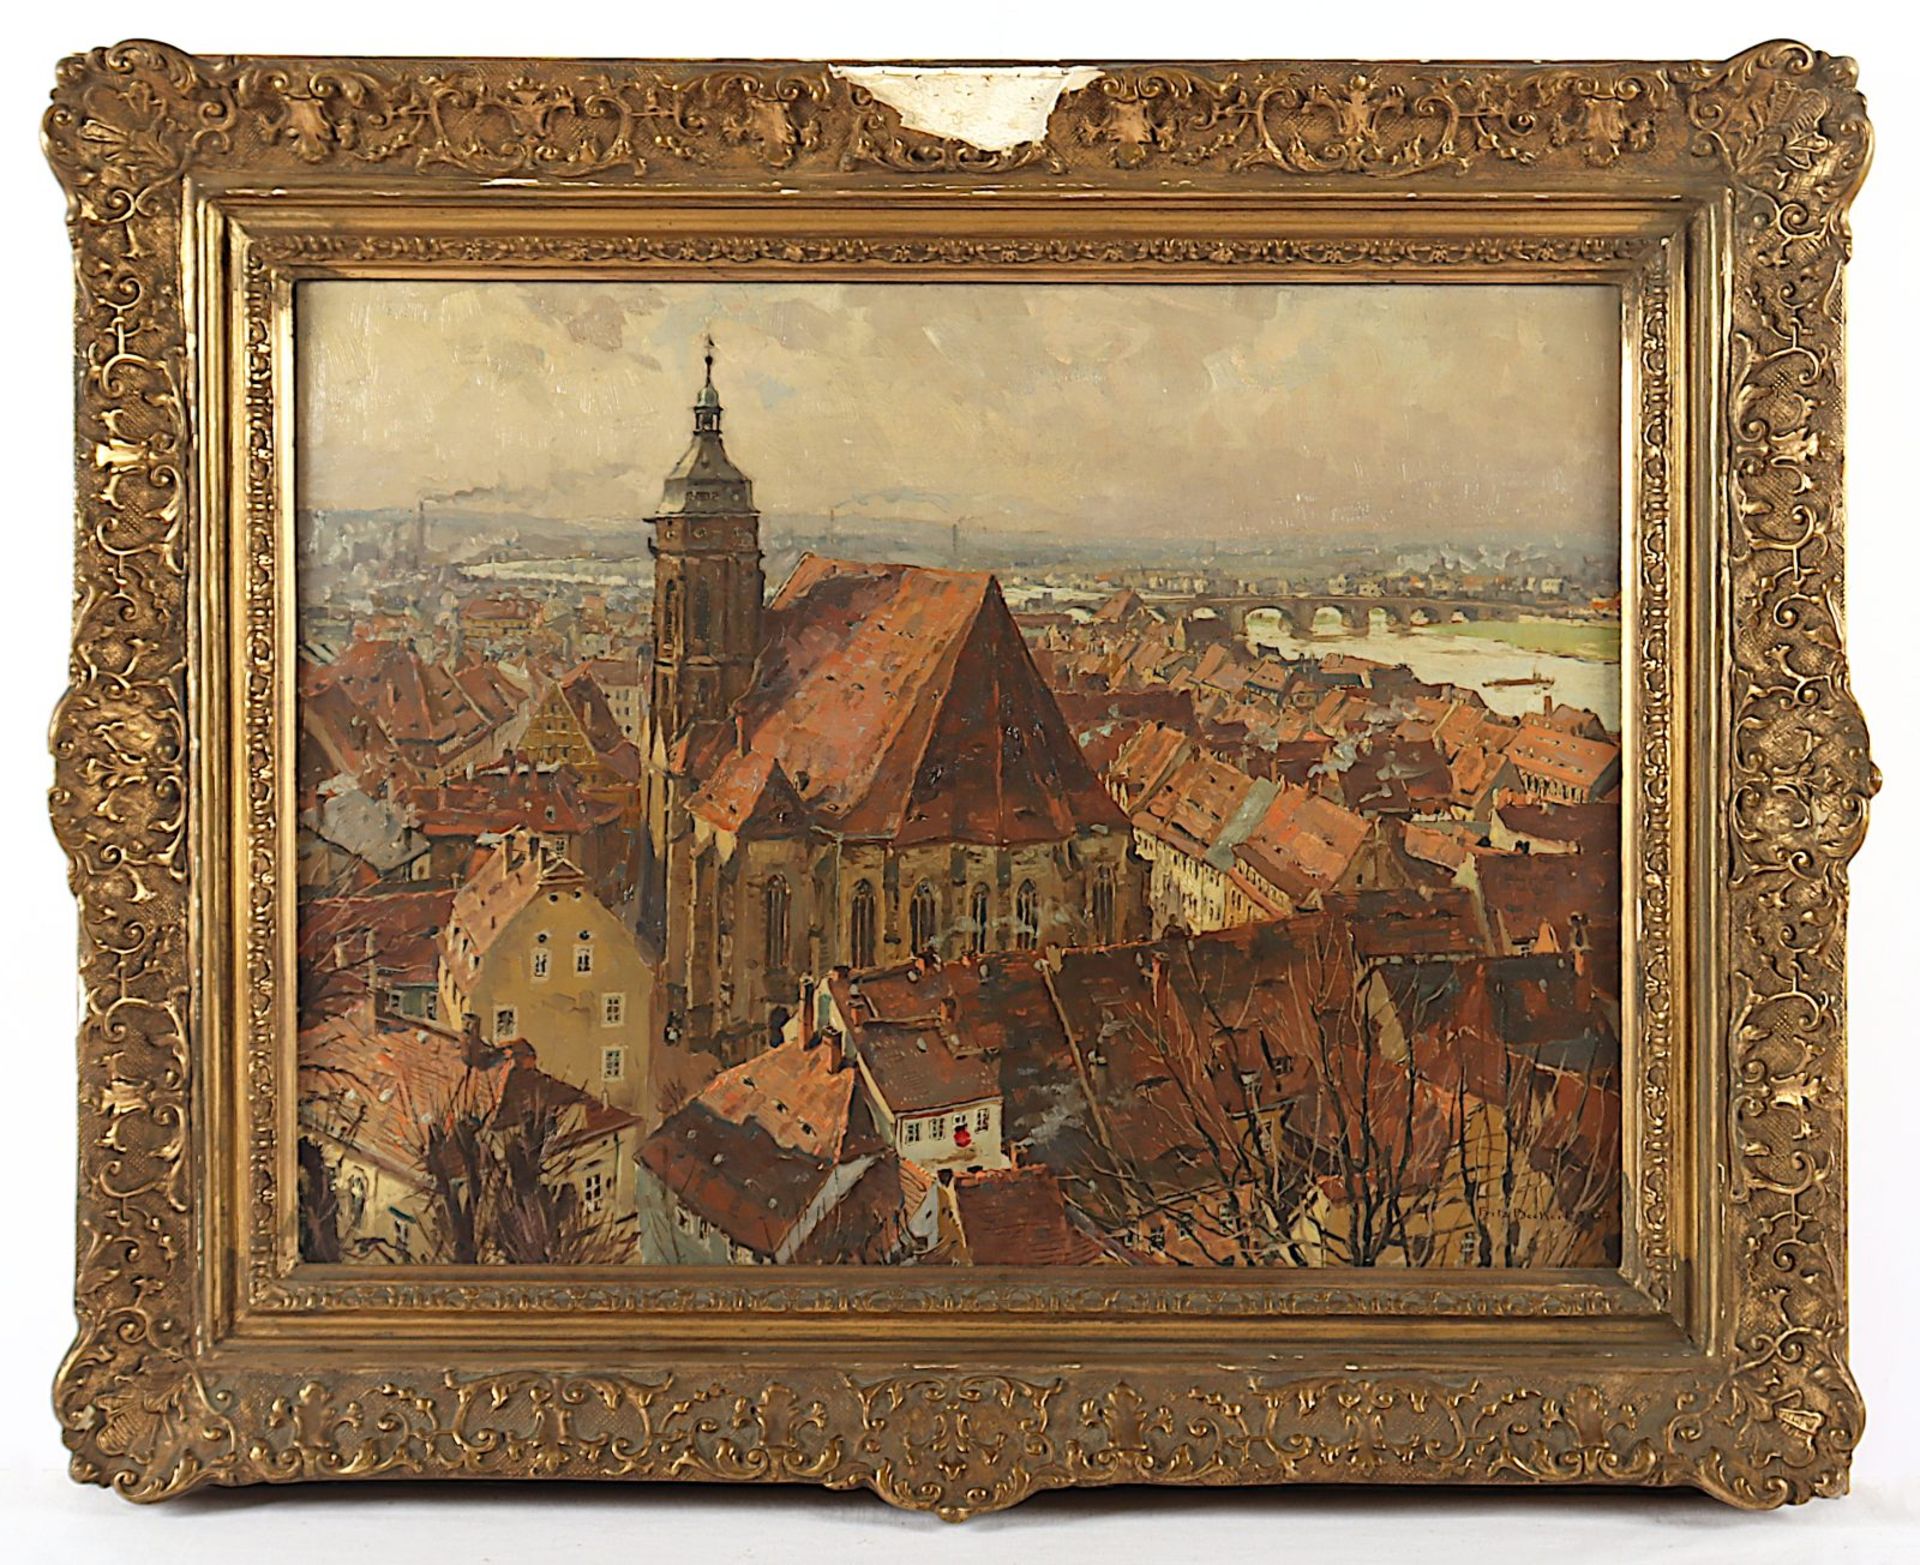 BECKERT, Fritz (1877-1962), "Blick auf die Marienkirche in Pirna", R. - Bild 2 aus 4